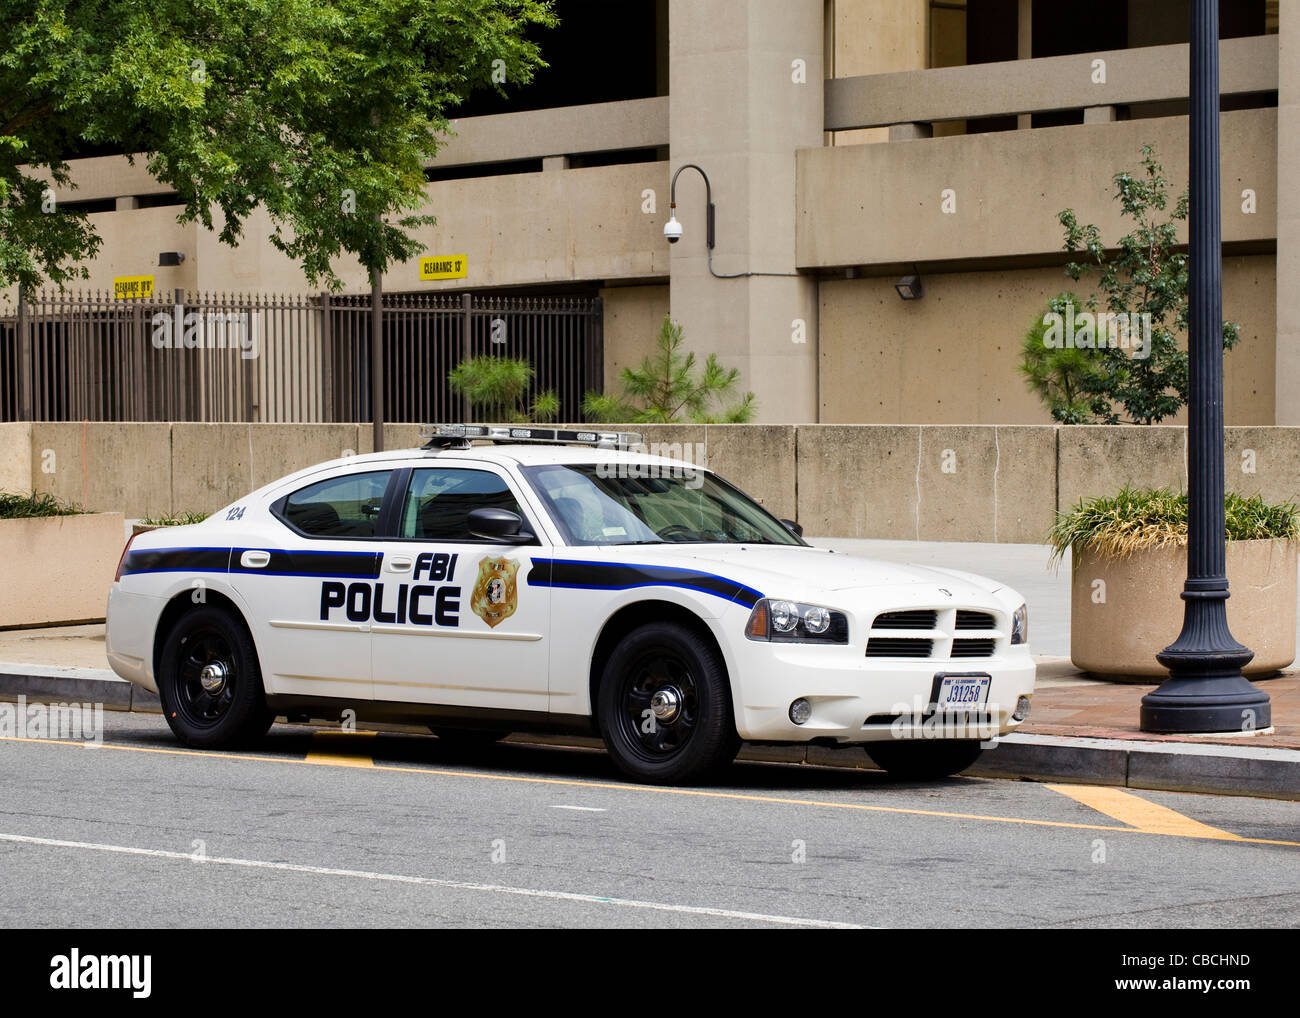 Eine Fbi Polizei Auto Parkten Ausserhalb Hauptsitz Washington Dc Usa Stockfotografie Alamy